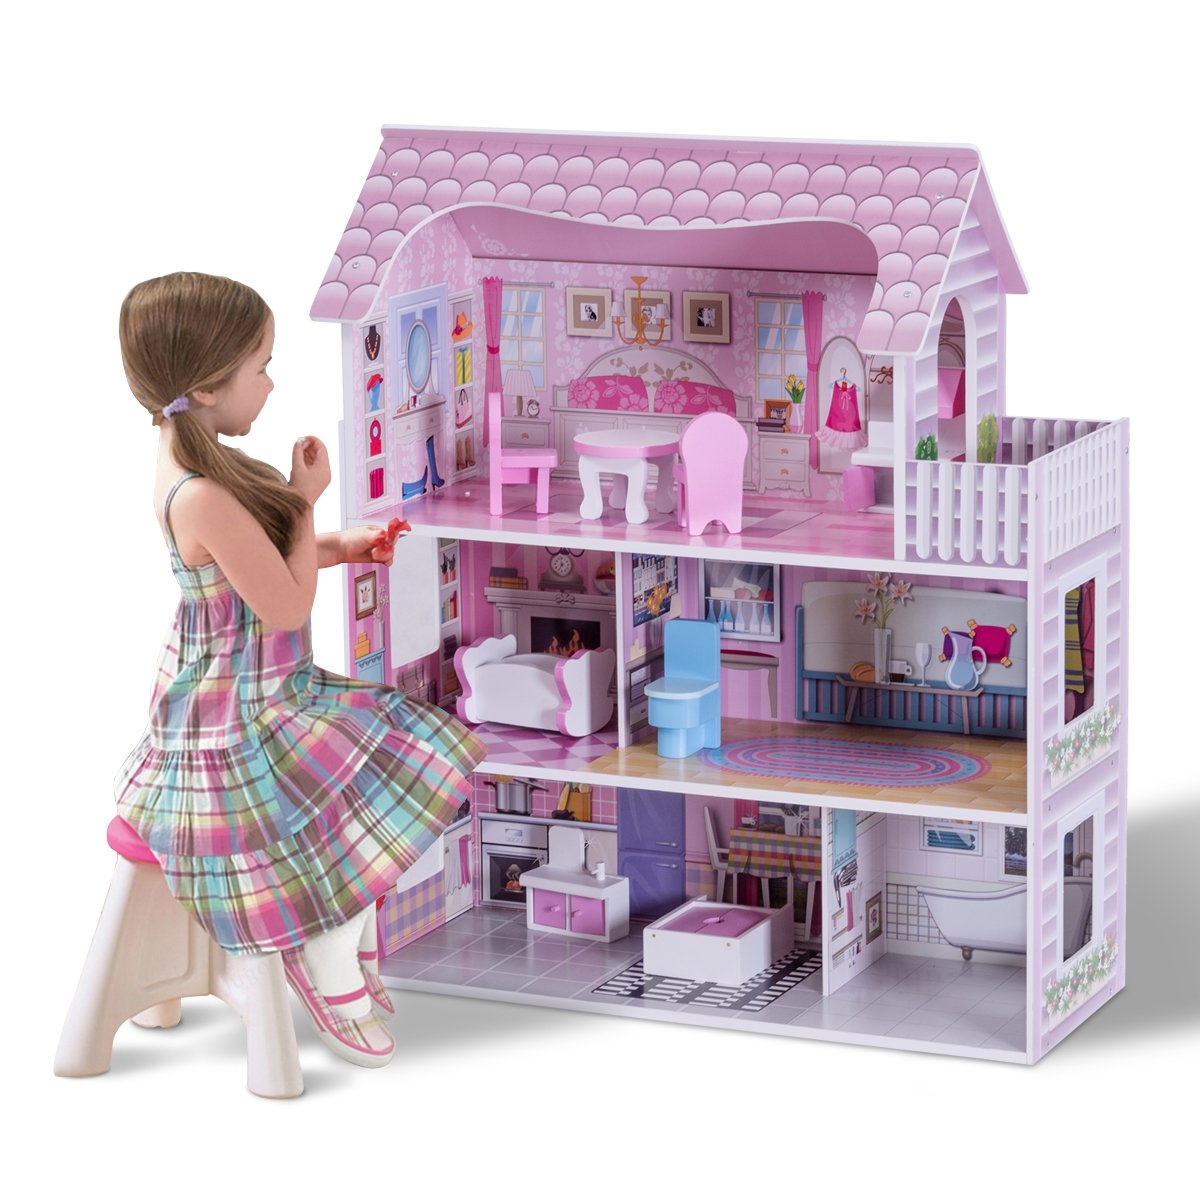 Casa delle bambole in legno per bambina Casa giocattolo dei bambini 3 piani con mobili e accessori 61x26,5x71cm